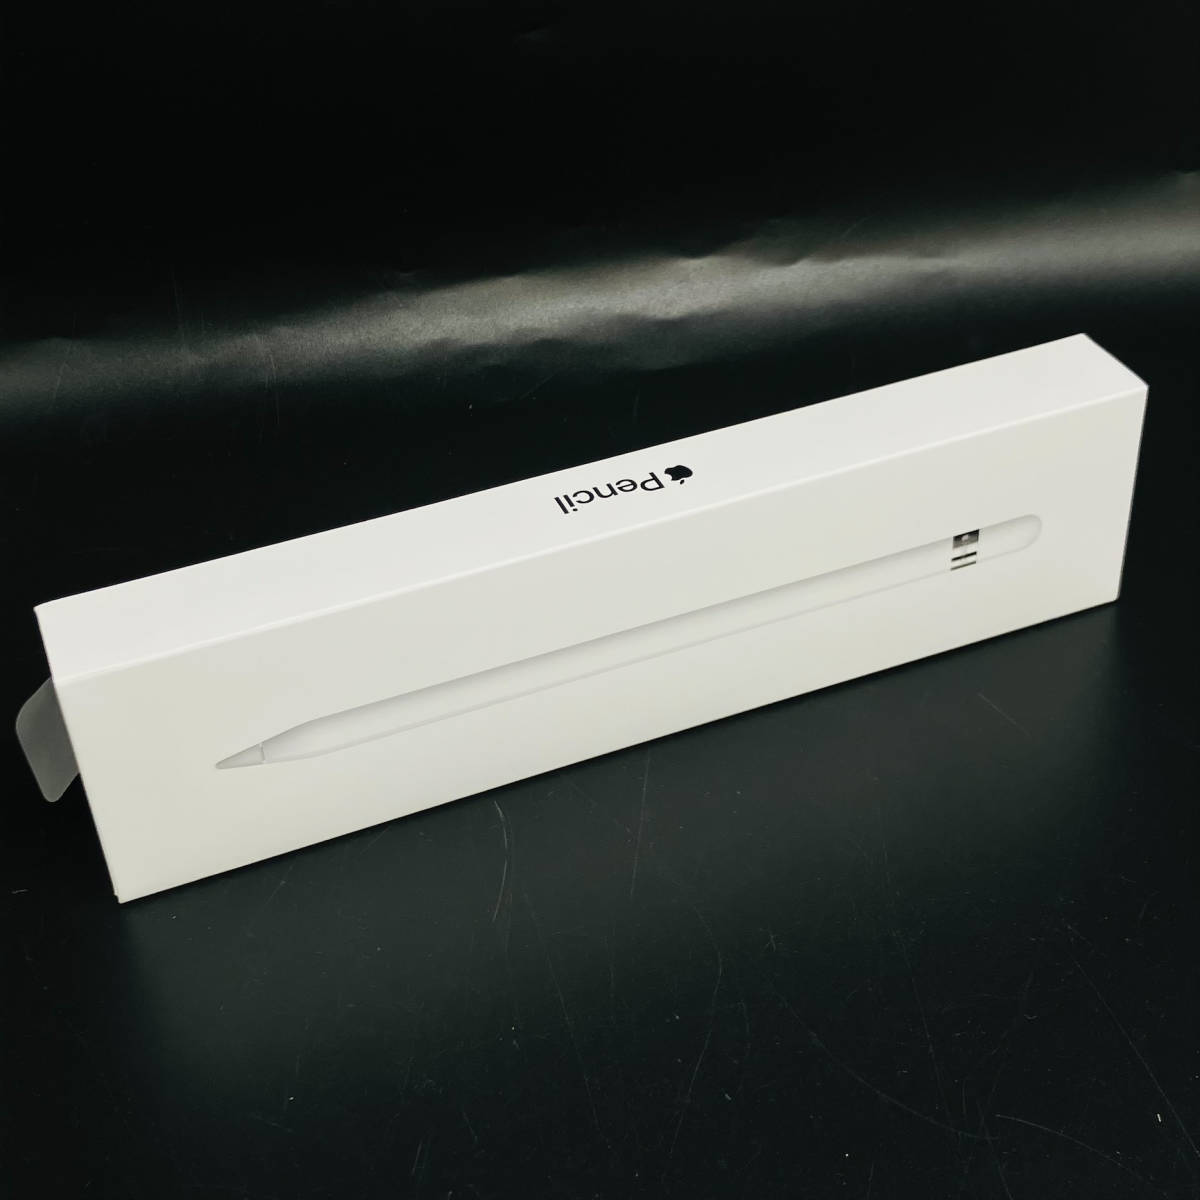 Applepencil 第一世代 MKOC2J/A iPad ペンシル 替え芯 コネクタ 箱付き アップル 製品 タッチペン 純正 格安 付属品 ホワイト _画像10